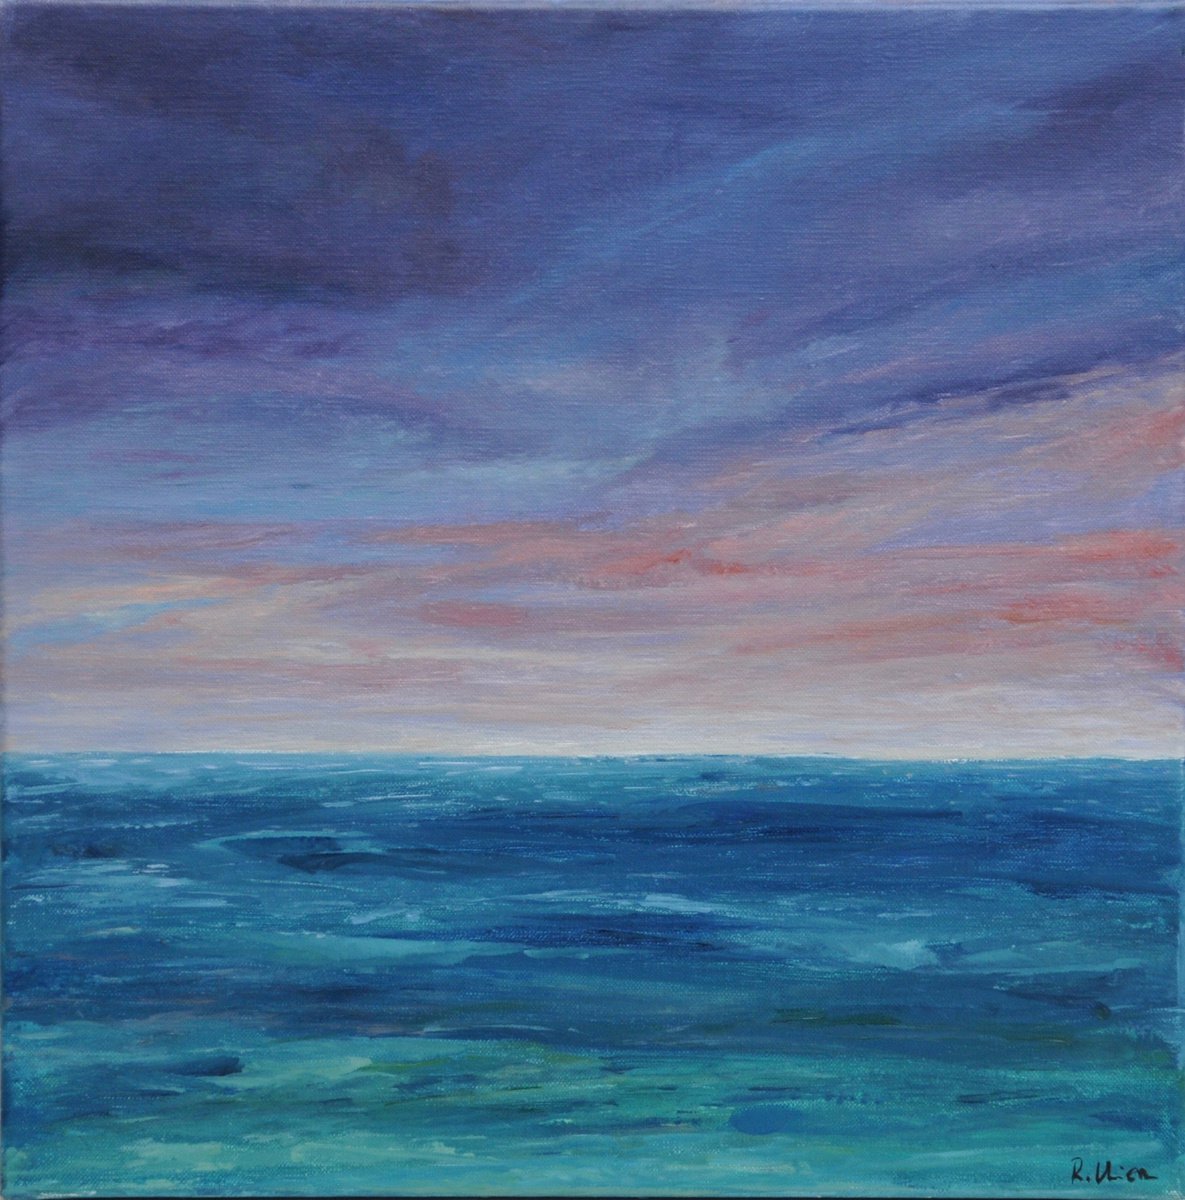 Suena con el mar by Fuensanta Ruiz Urien